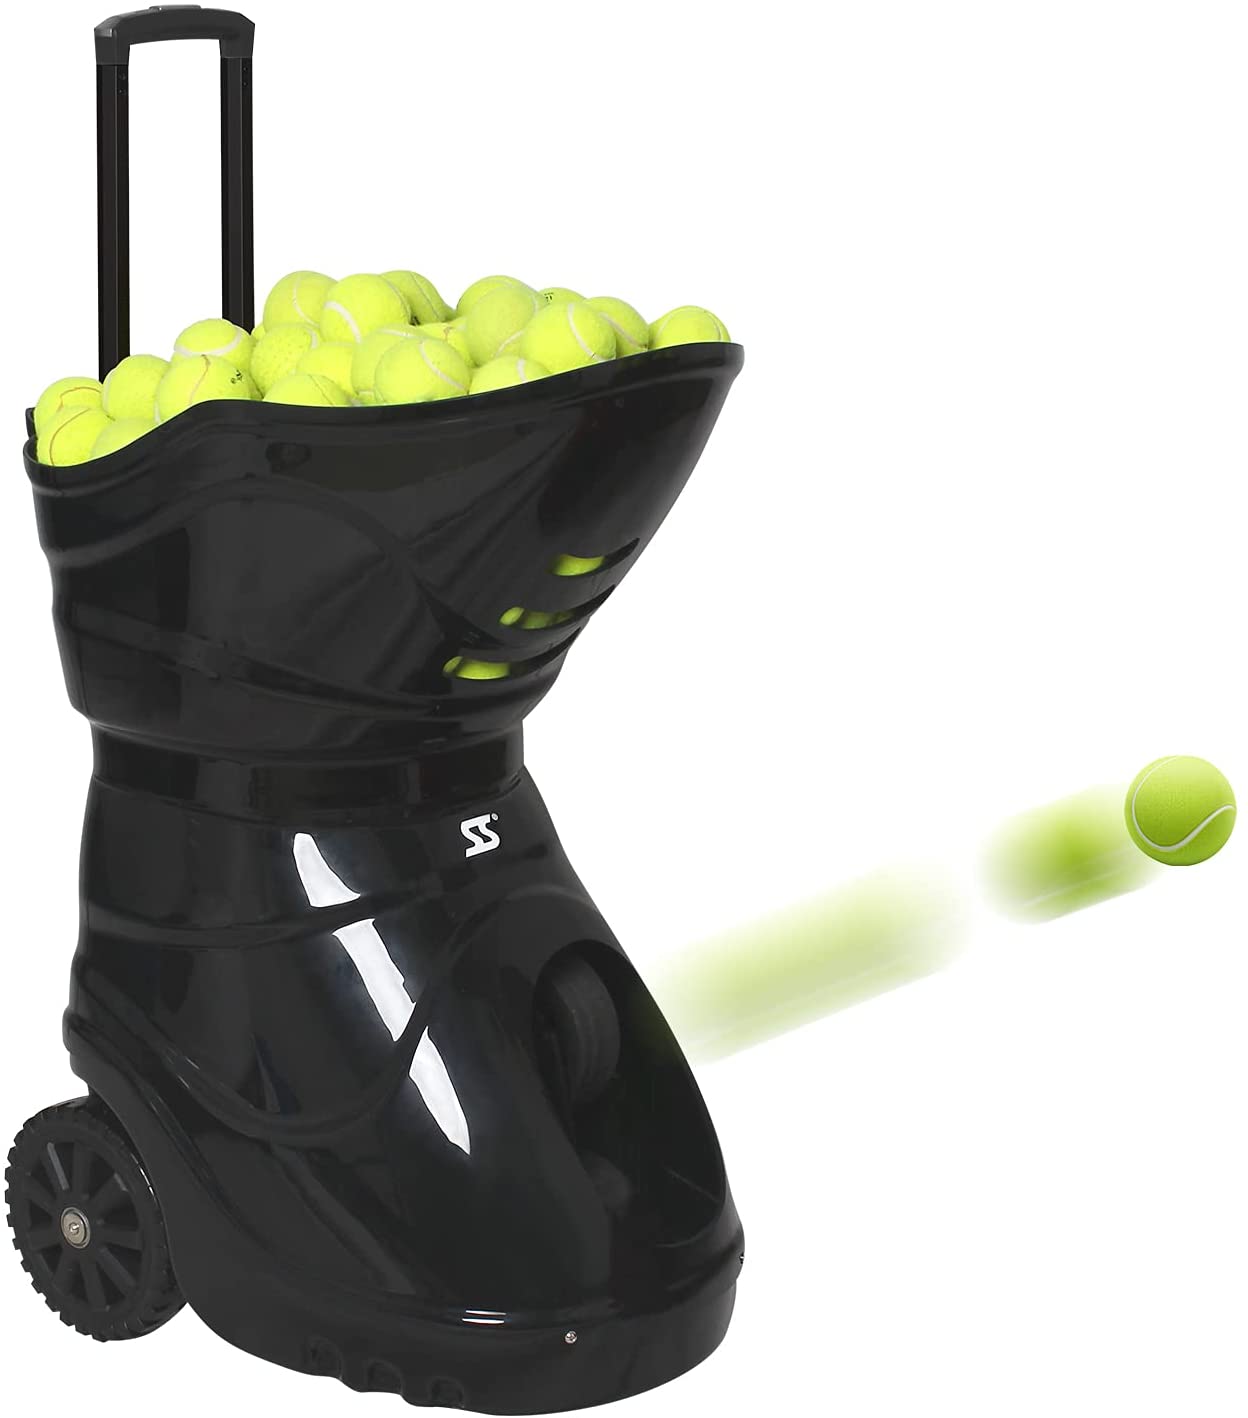 Tennis Ball Machine1-61f35d2f